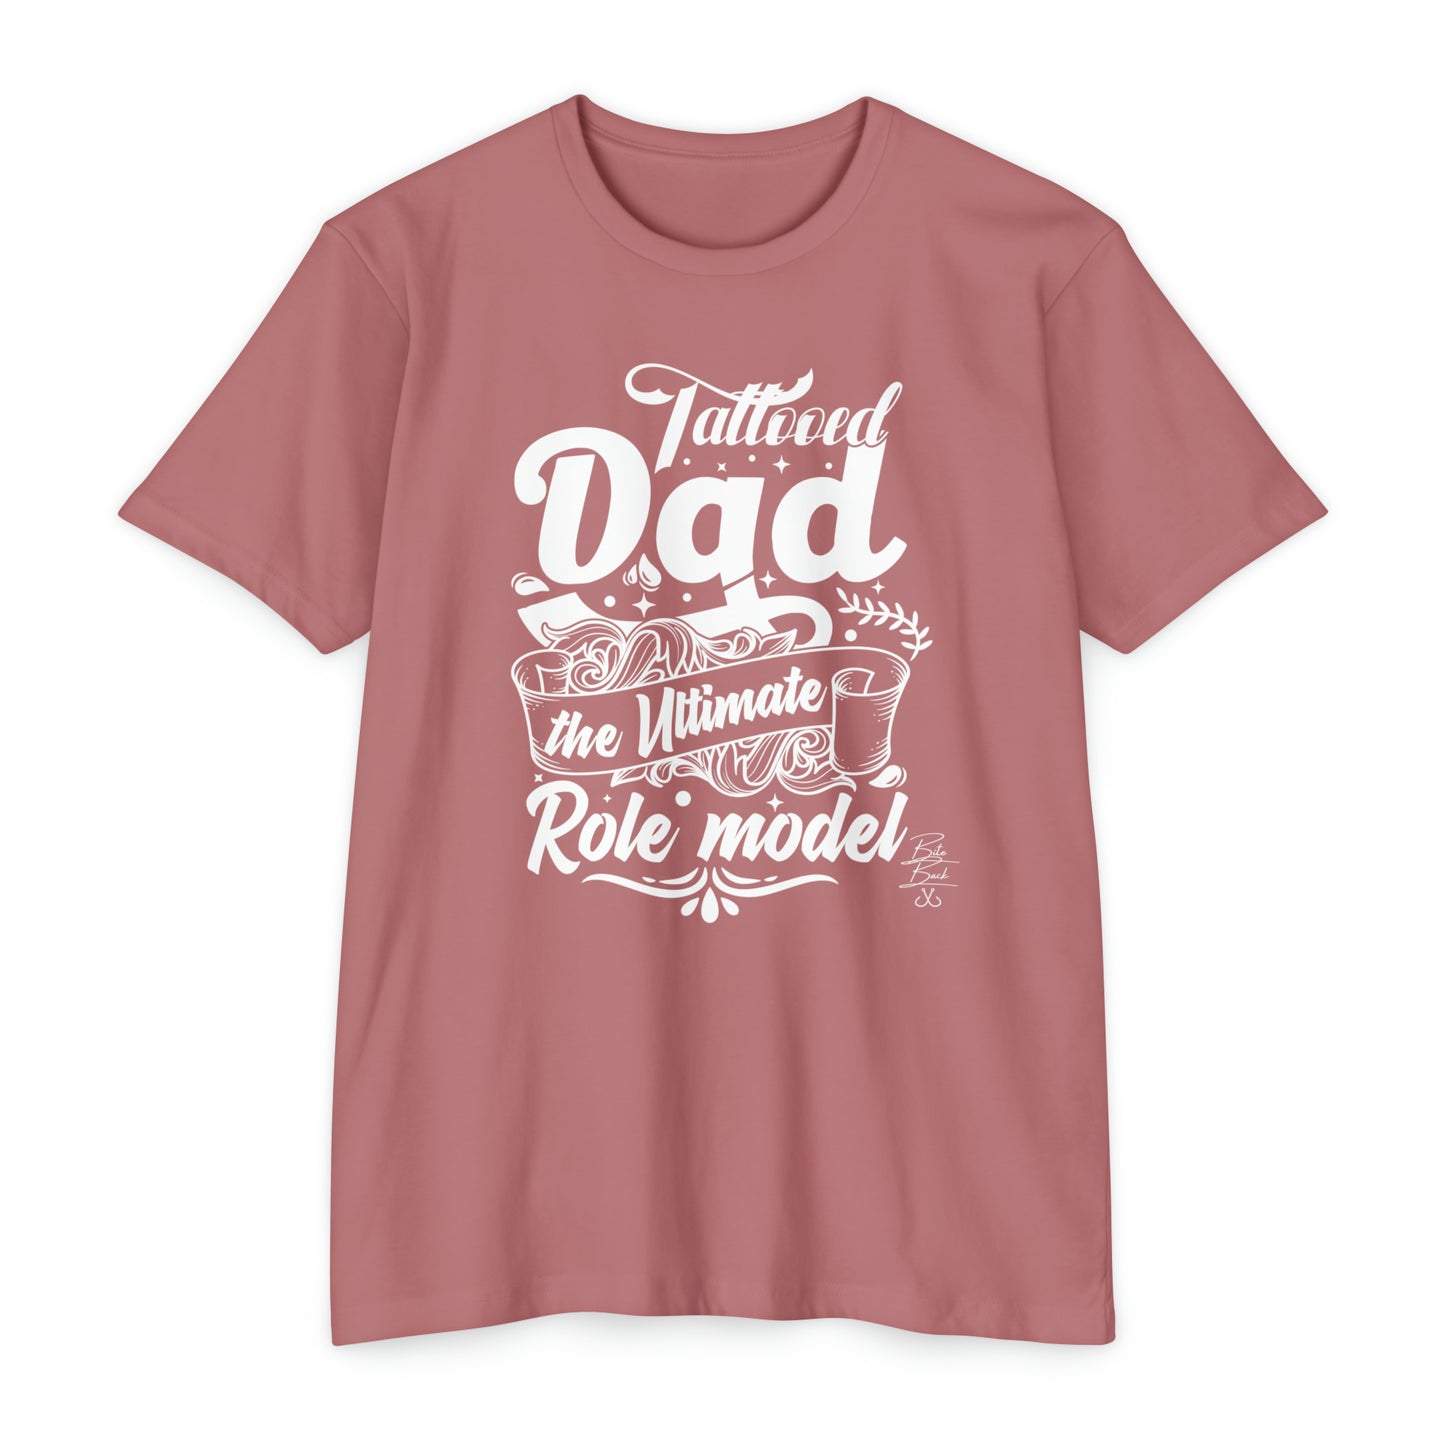 Tattooed Dad T-shirt